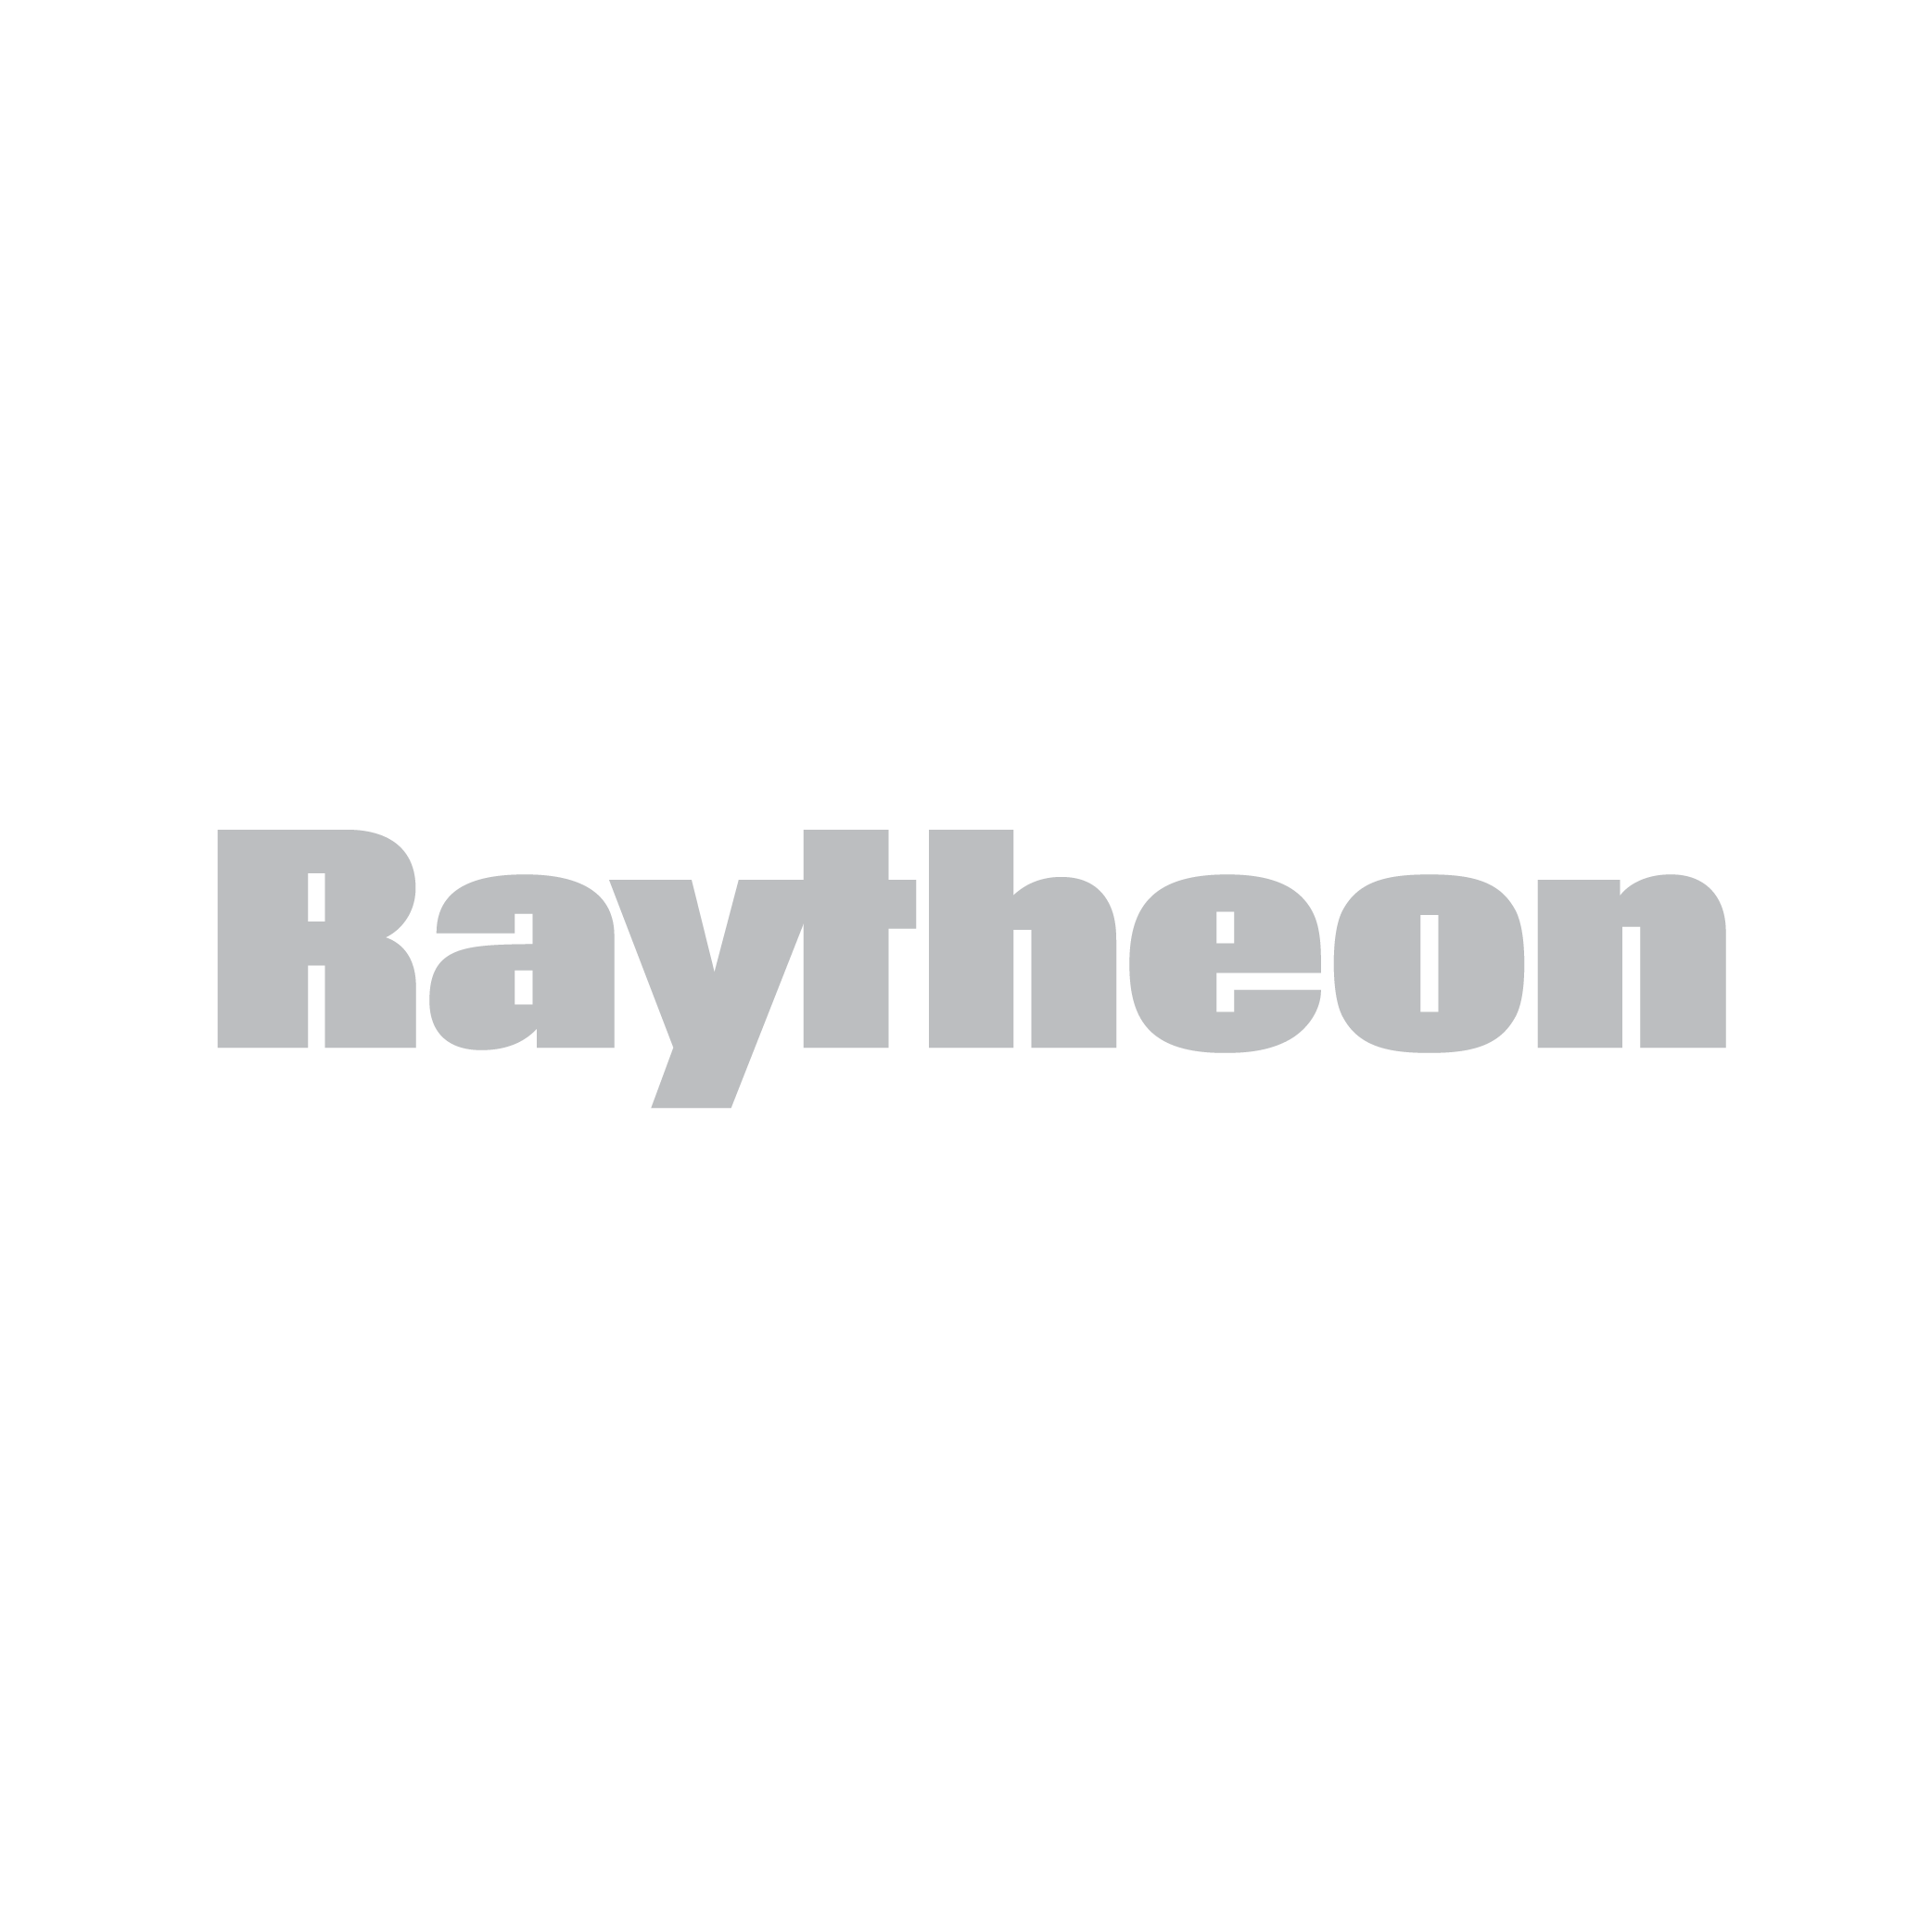 raytheon_gray-01.png